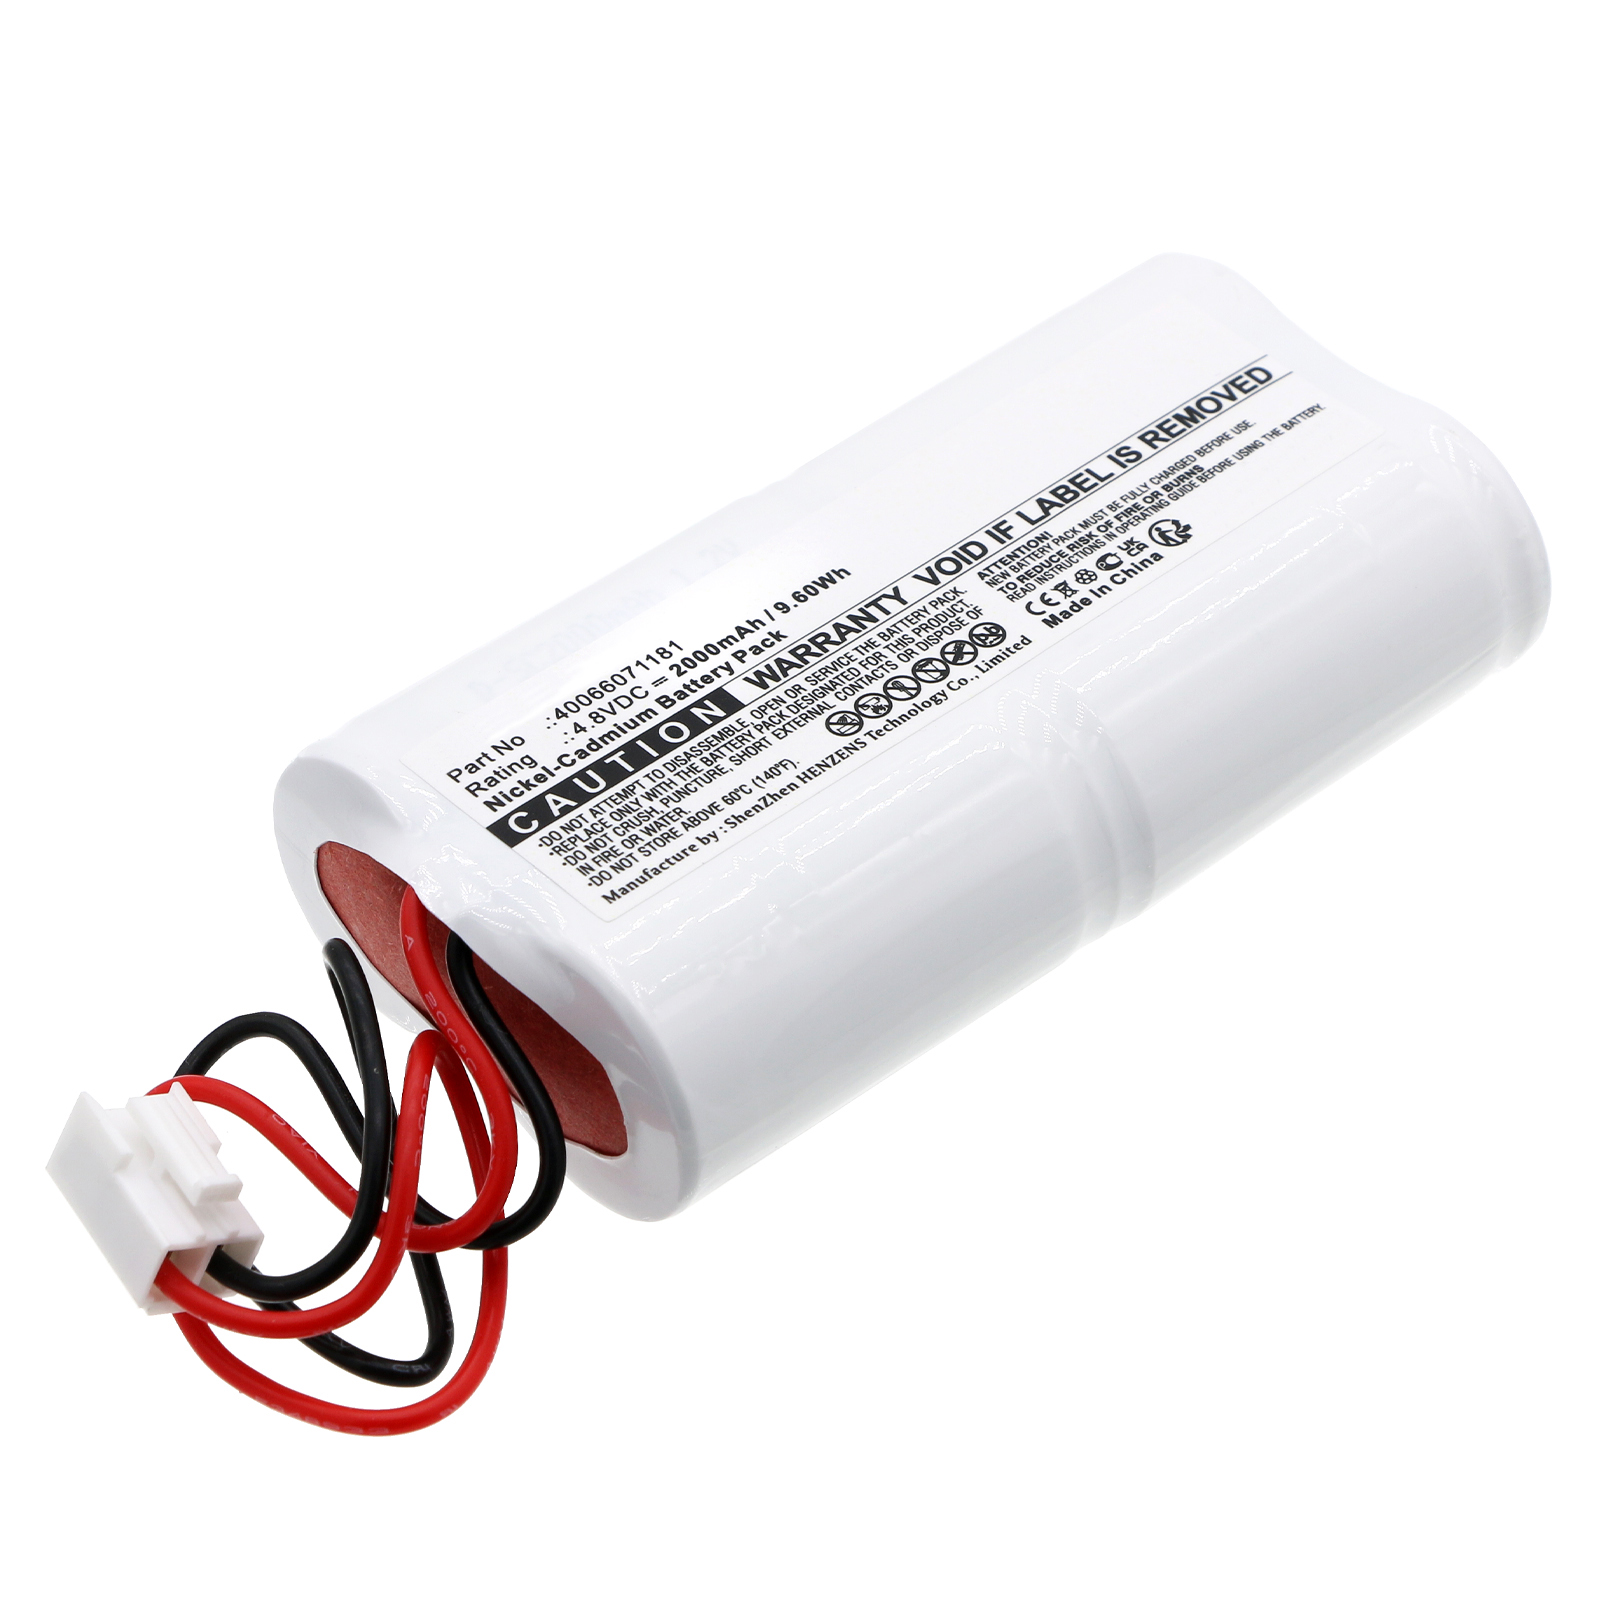 Synergy Digital Emergency Lighting Battery, Compatible with Eaton 40066071181 Emergency Lighting Battery (Ni-CD, 4.8V, 2000mAh)